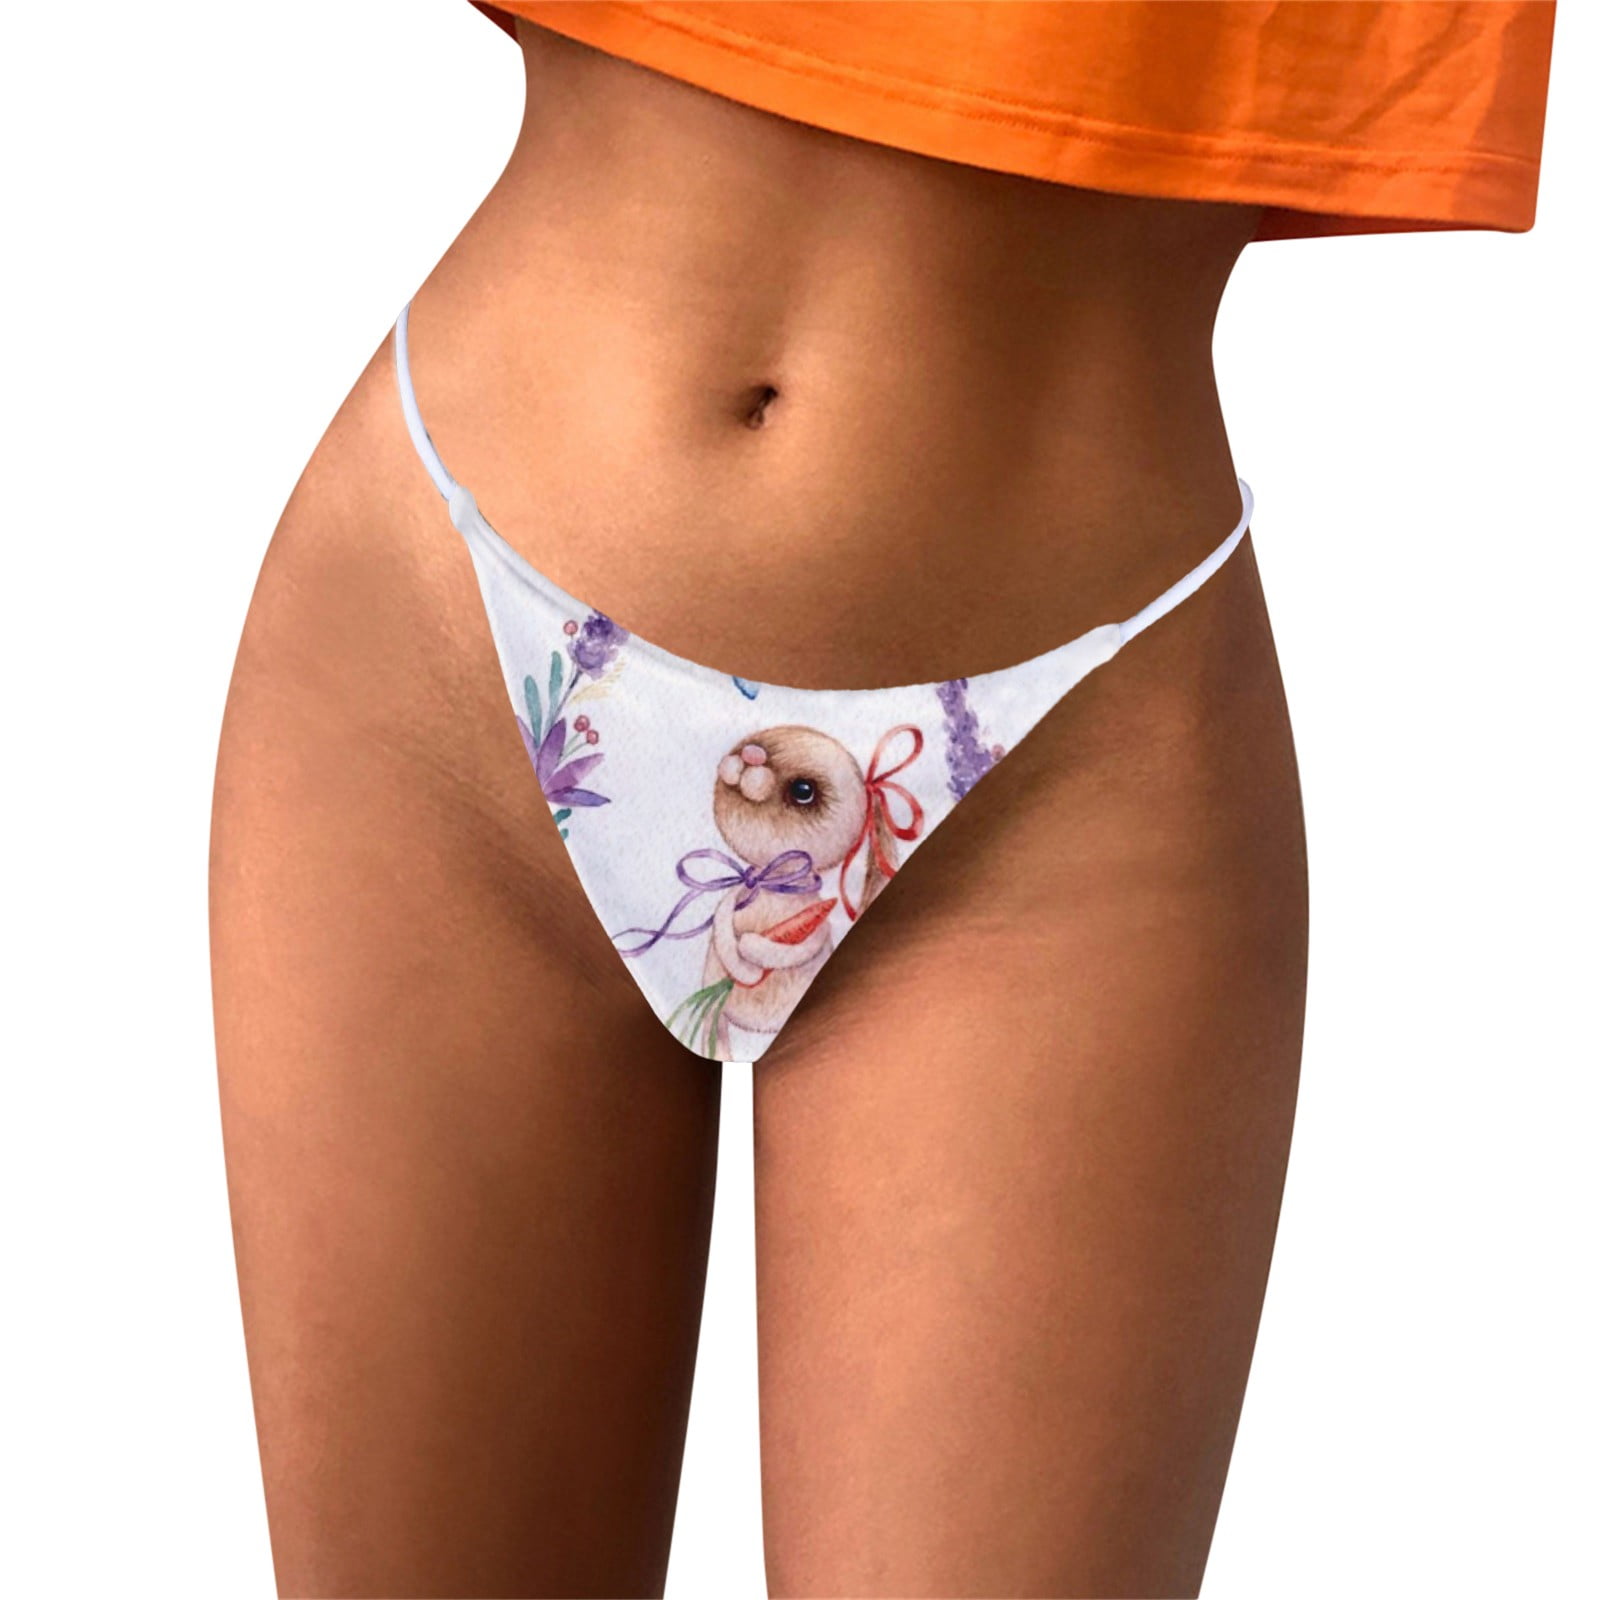 Transparent Panties Sexy Seductive Lace Flowers Low-rise Ladies